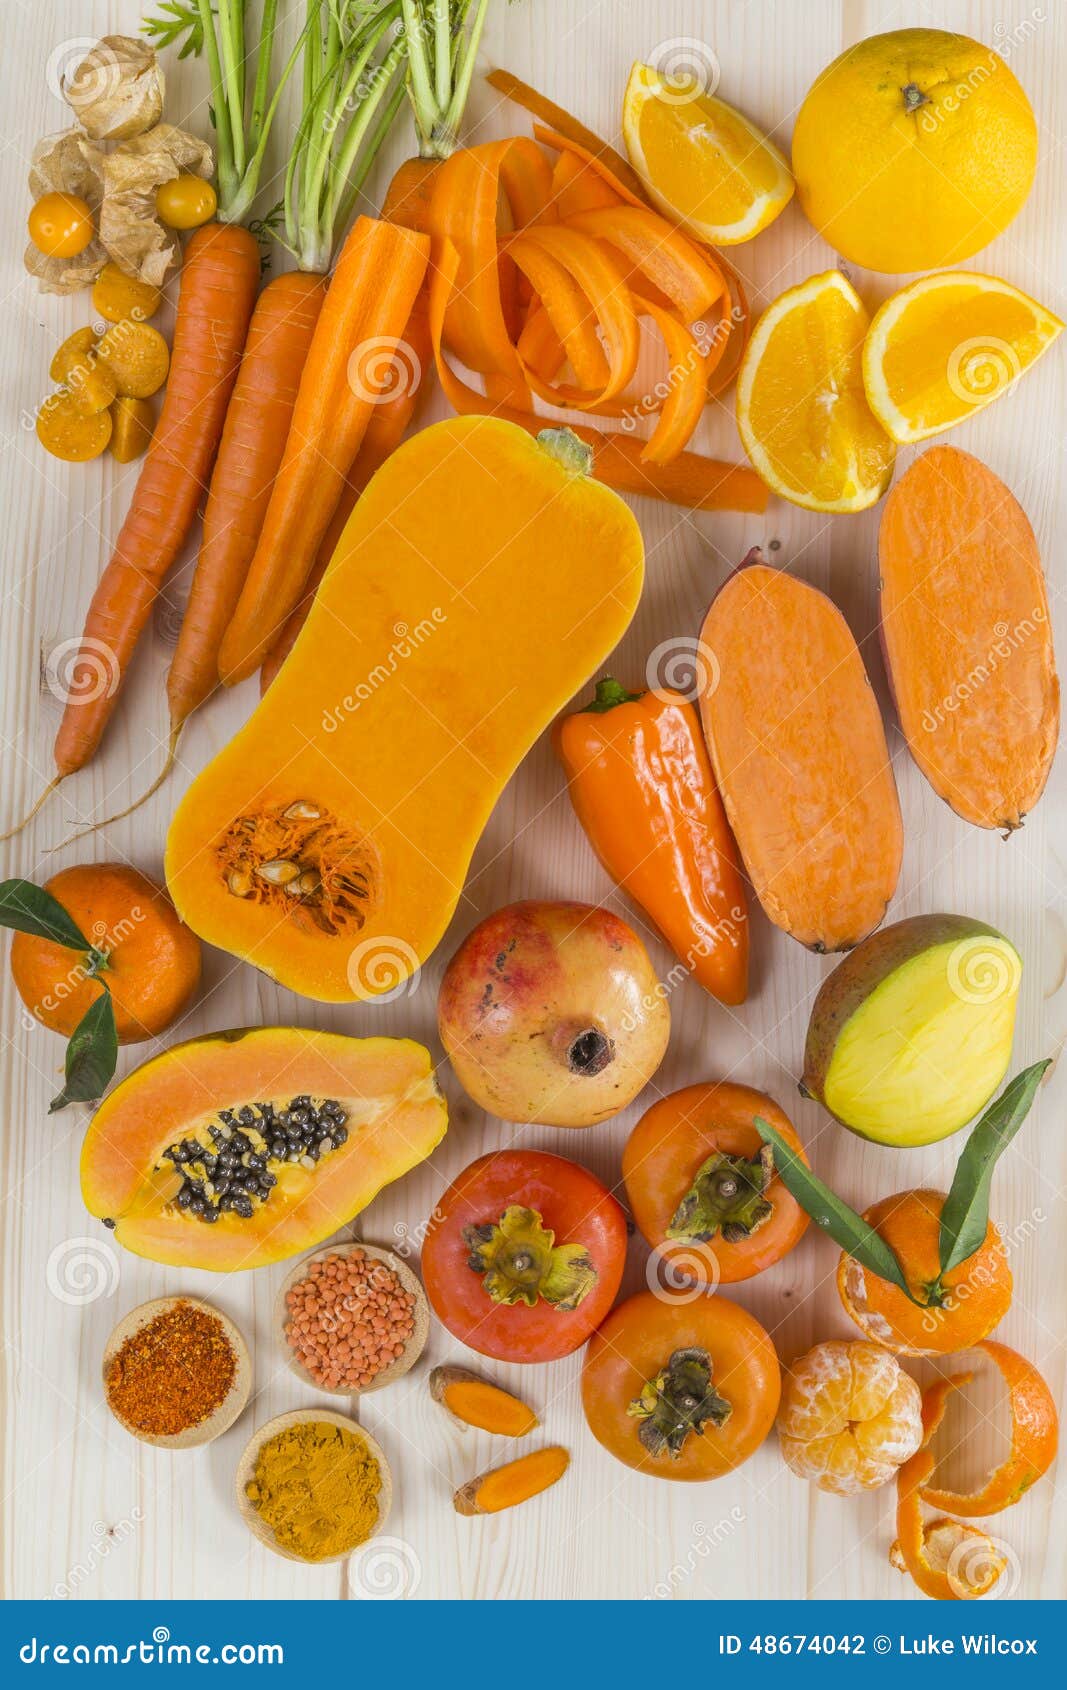 medios de comunicación Imperial Tesoro Fruta Y Verdura De Color Naranja Foto de archivo - Imagen de caroteno,  antioxidante: 48674042